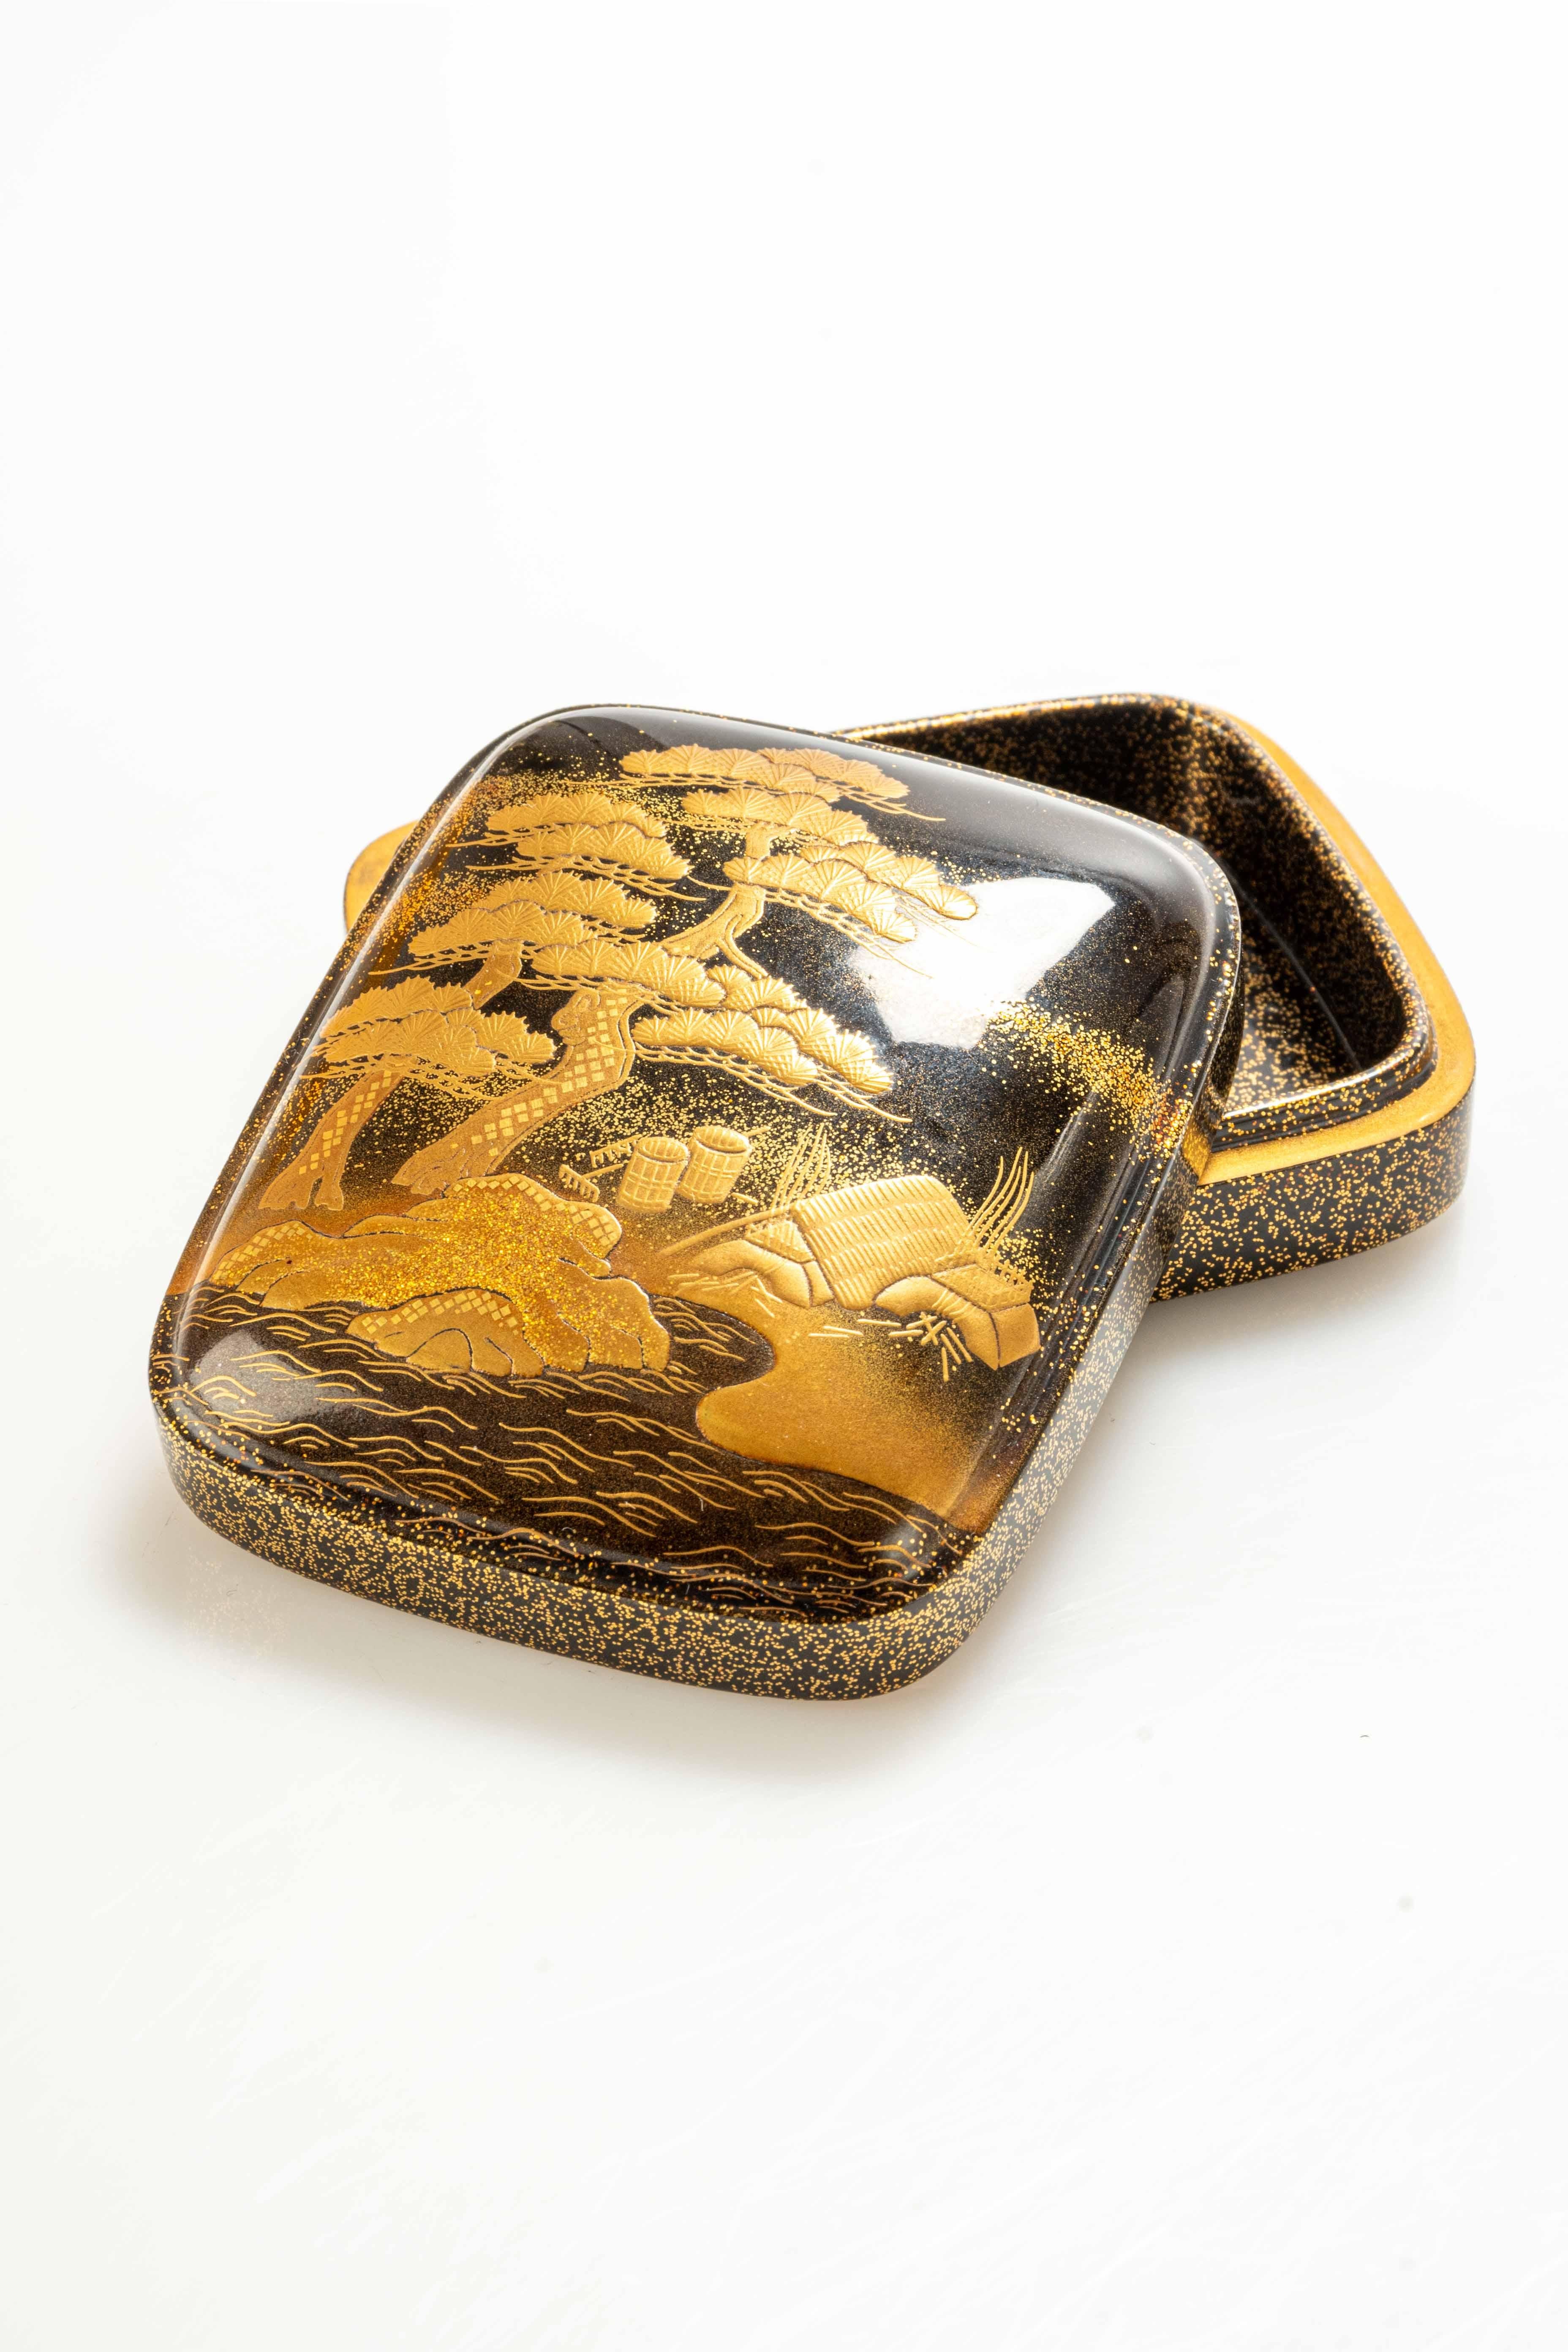 Kogo-Dose aus Maki-è-Lack, mit gewölbtem Deckel, der eine naturalistische Szene darstellt. Die Goldverzierung zeigt die japanische Kiefer, Matsu genannt, und ein typisches Haus mit Strohdach am Ufer einer Wasserstraße.

Verkauft mit seinem